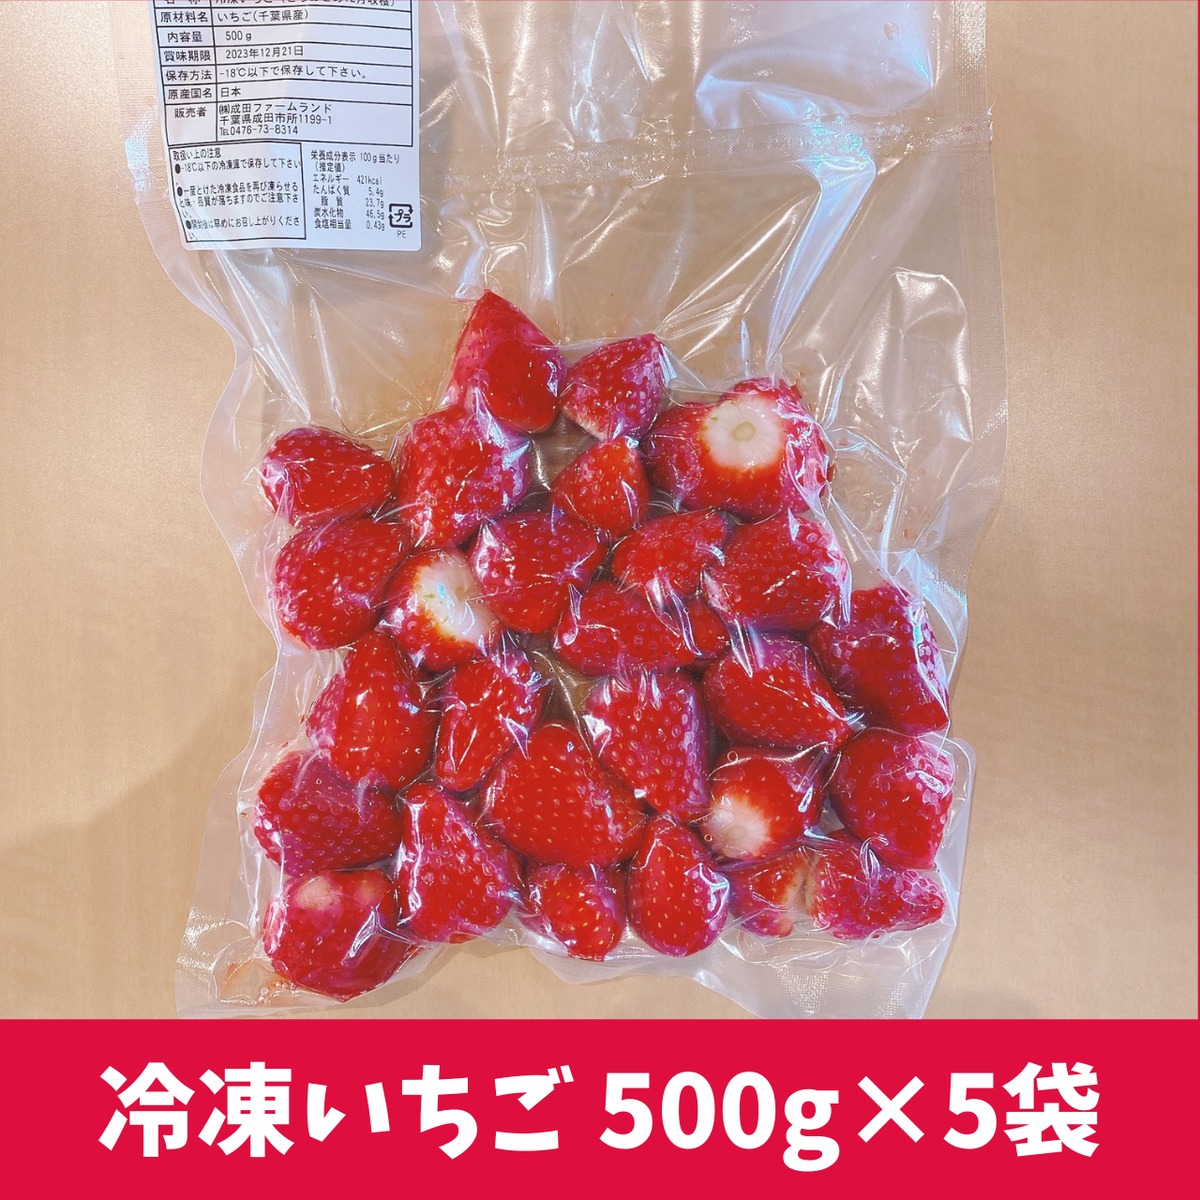 冷凍ゆうべにイチゴ5キロ →500g✖10個 送料込7200円